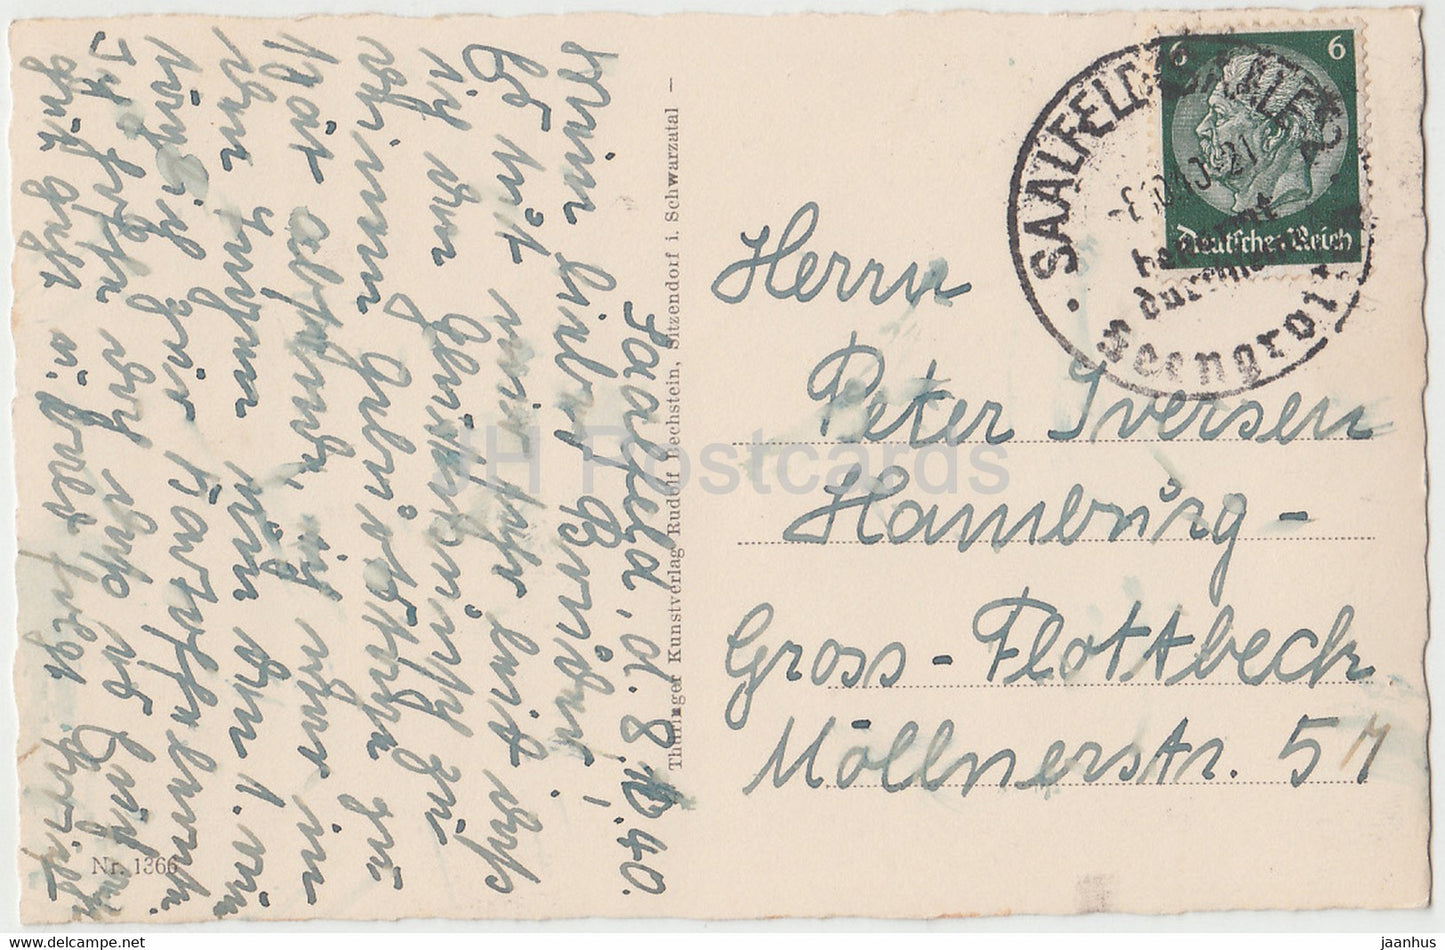 Saalfeld Saale - Kulm - 1366 - old postcard - 1940 - Germany - used